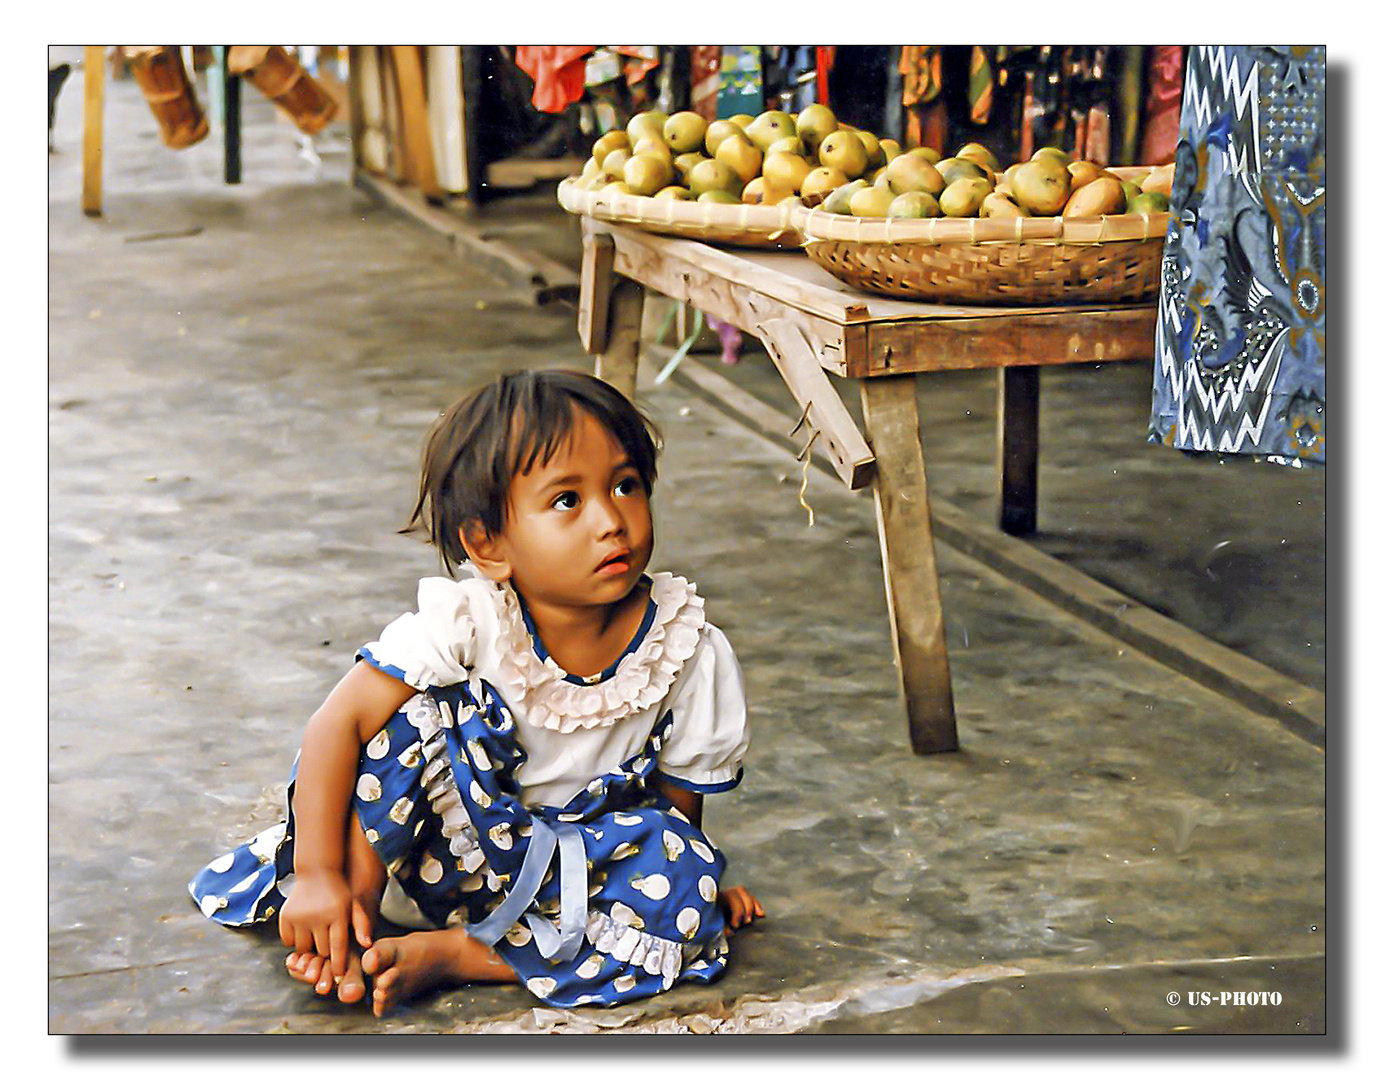 Bataker Mädchen auf dem Markt - Sumatra